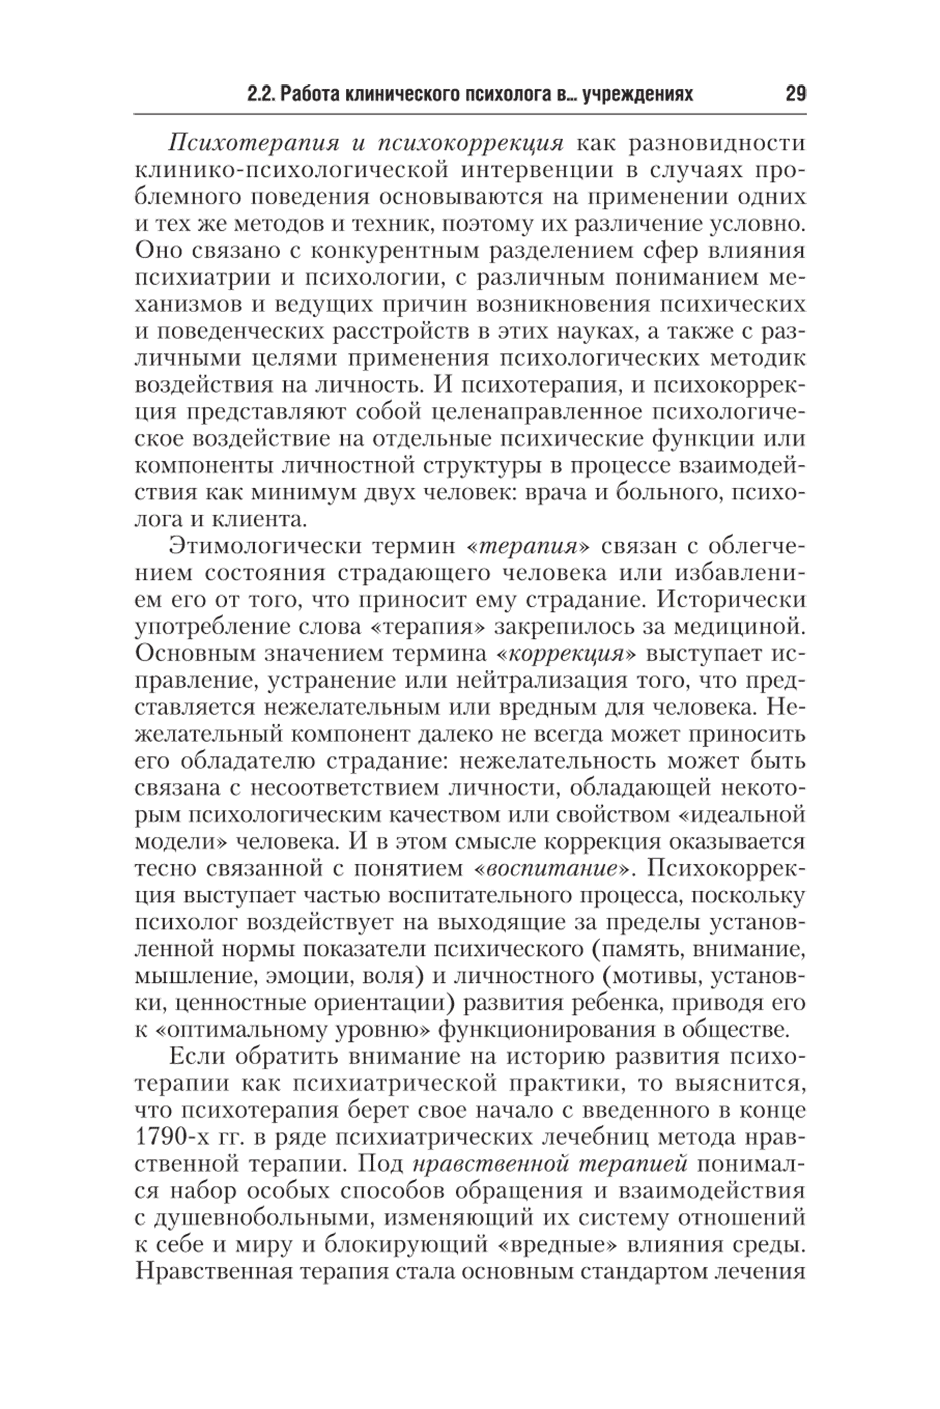 Пример страницы из книги "Клиническая психология" - Ефремова Г. И.